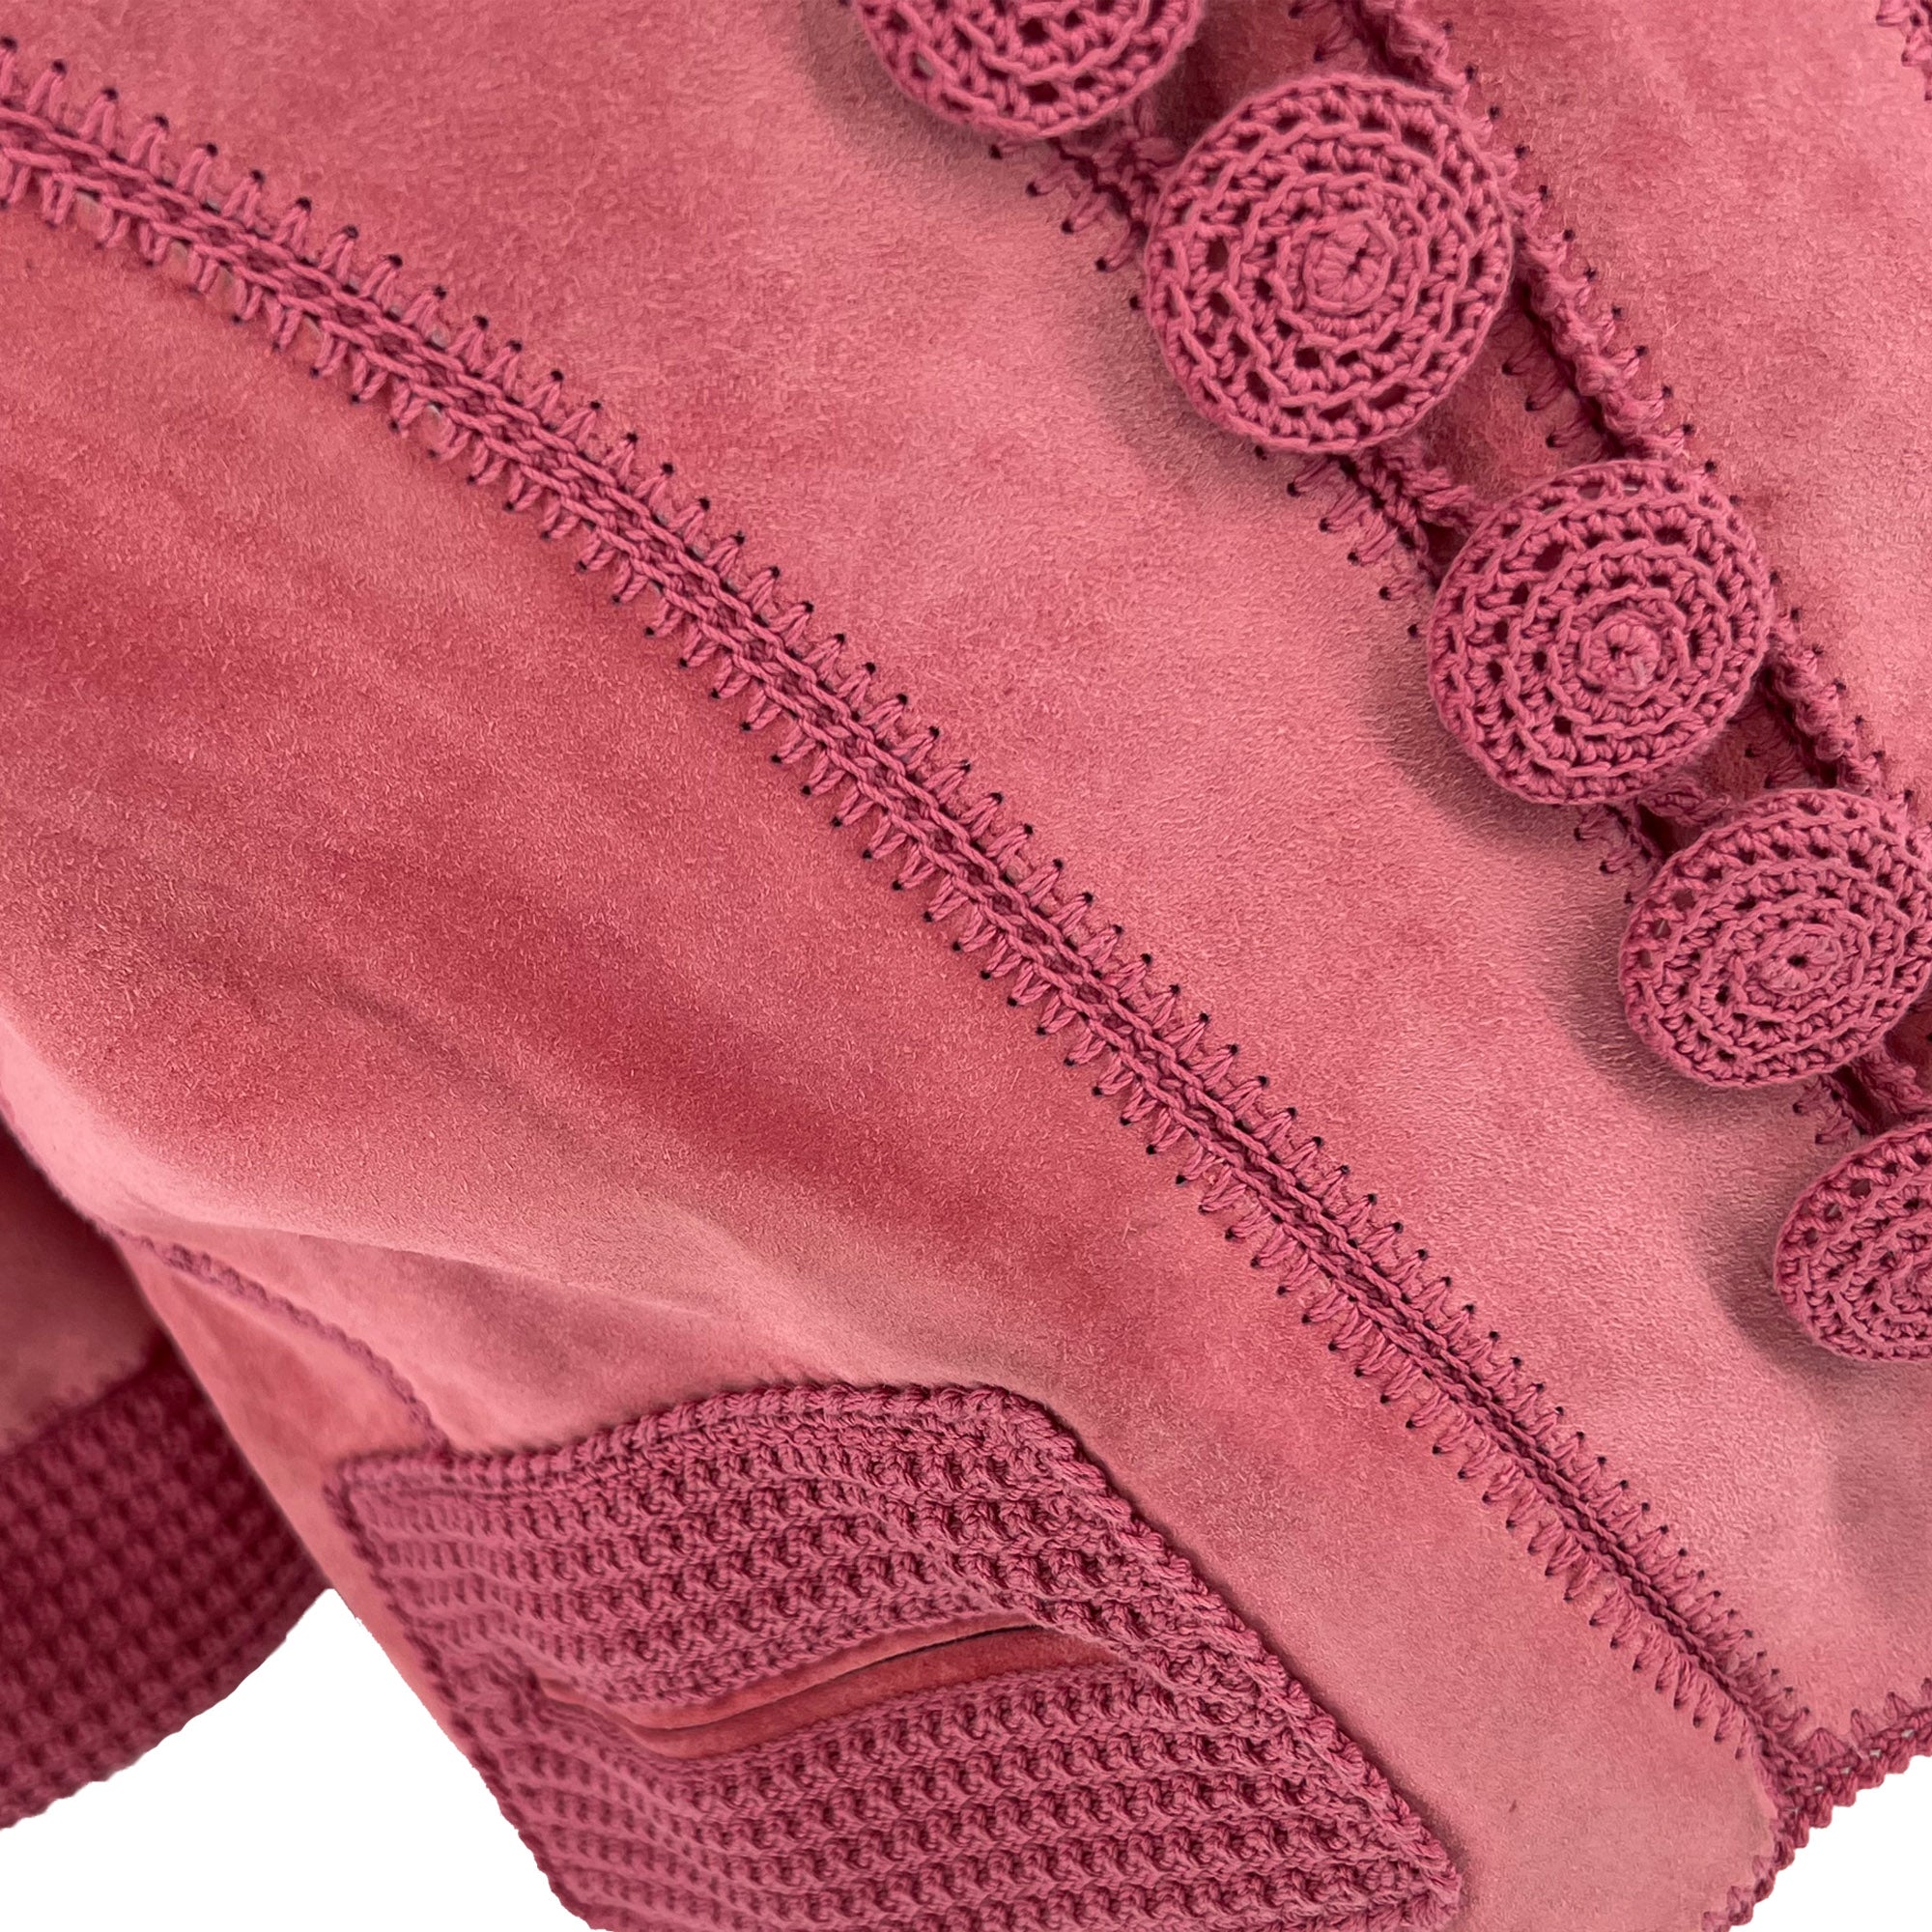 Louis Vuitton Pink Suede Short Vest